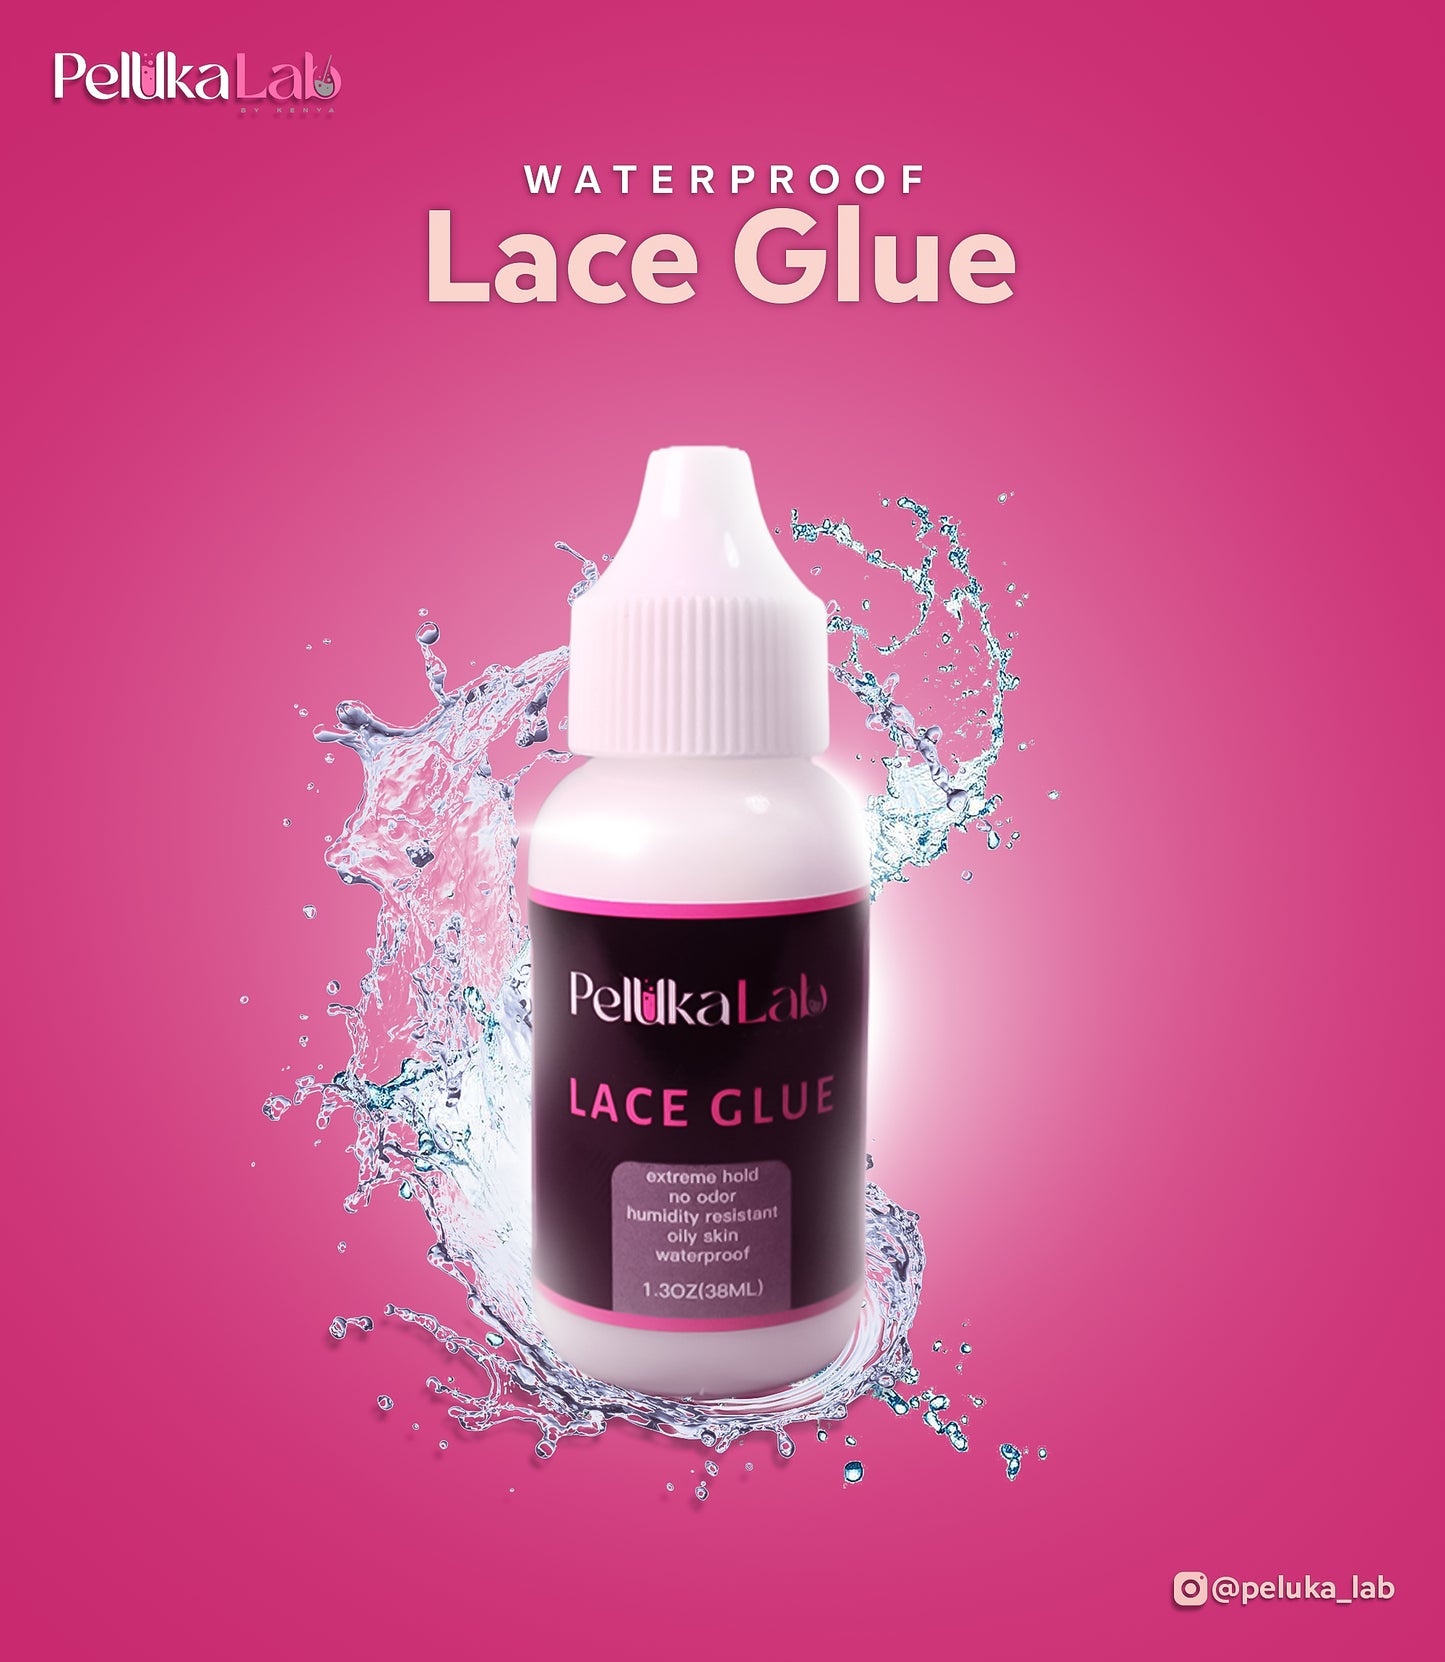 Waterproof Lace Glue